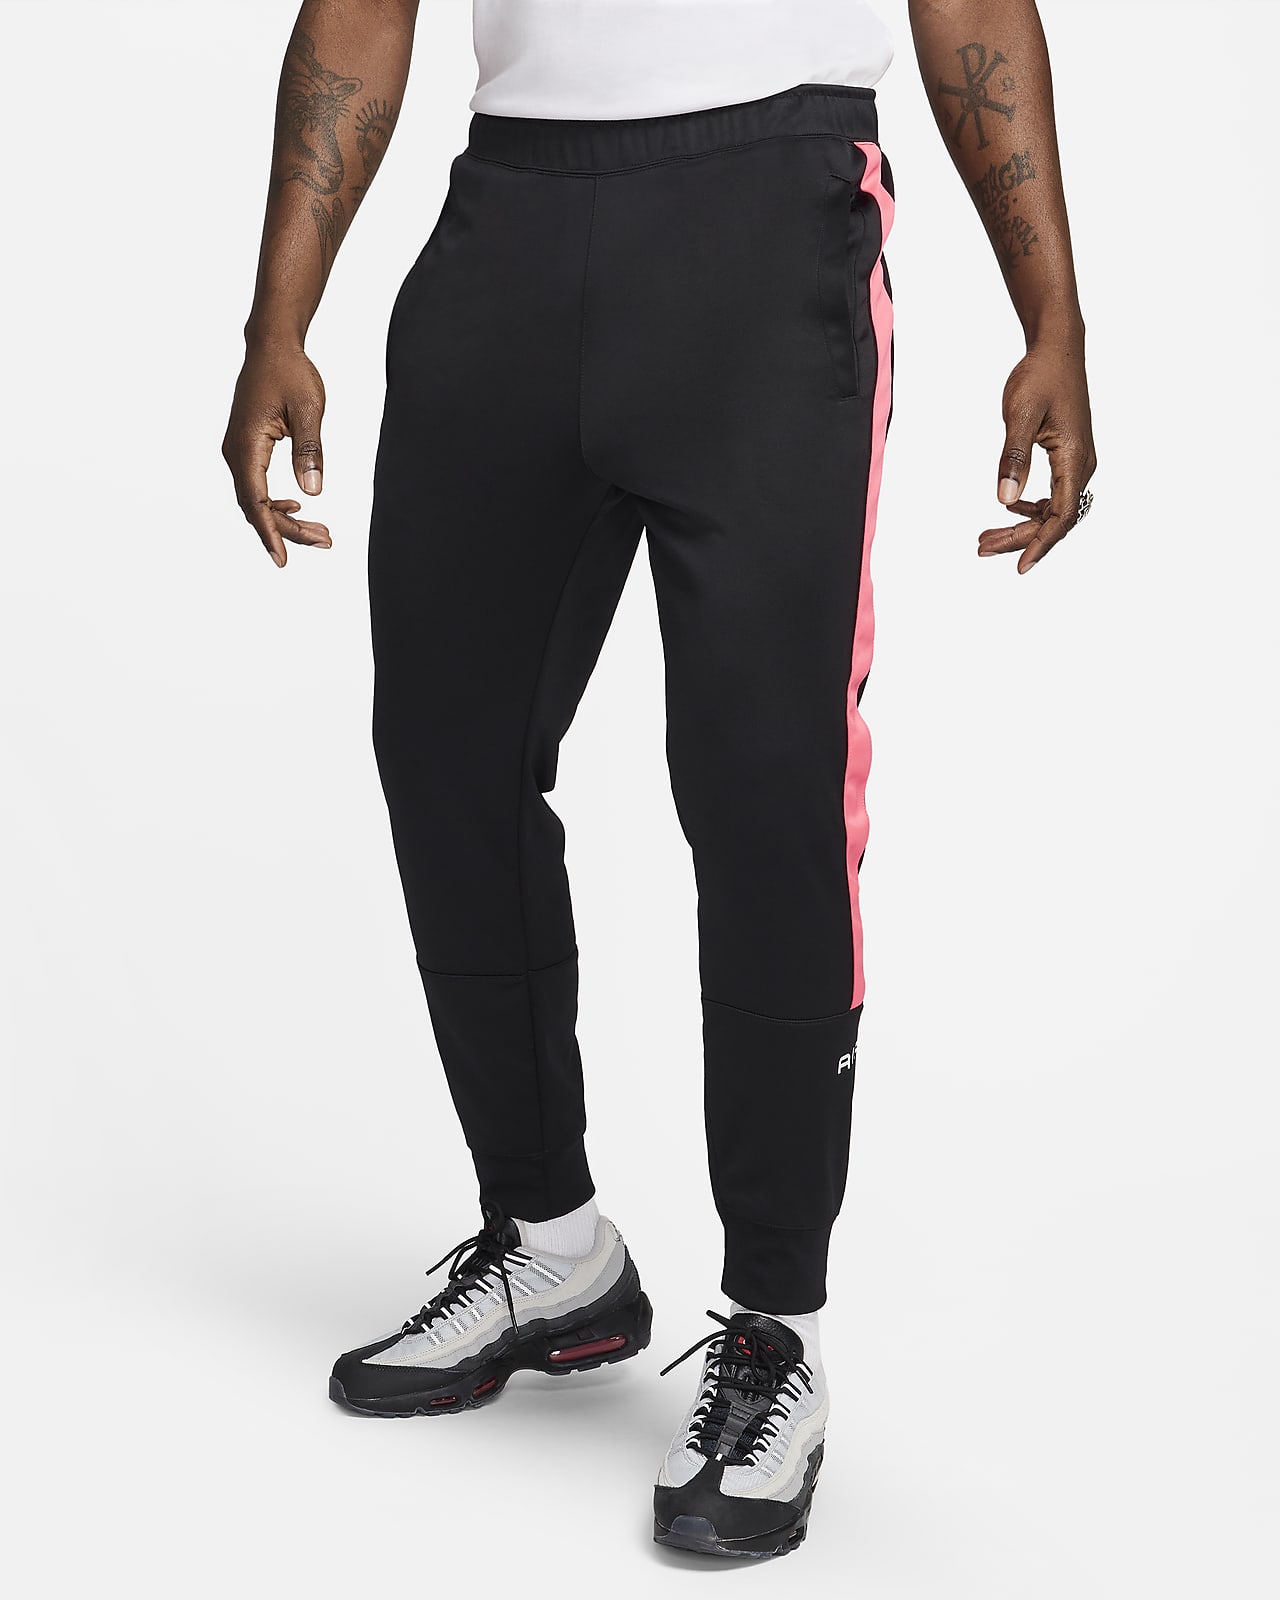 Nike Air Pantalons jogger - Home